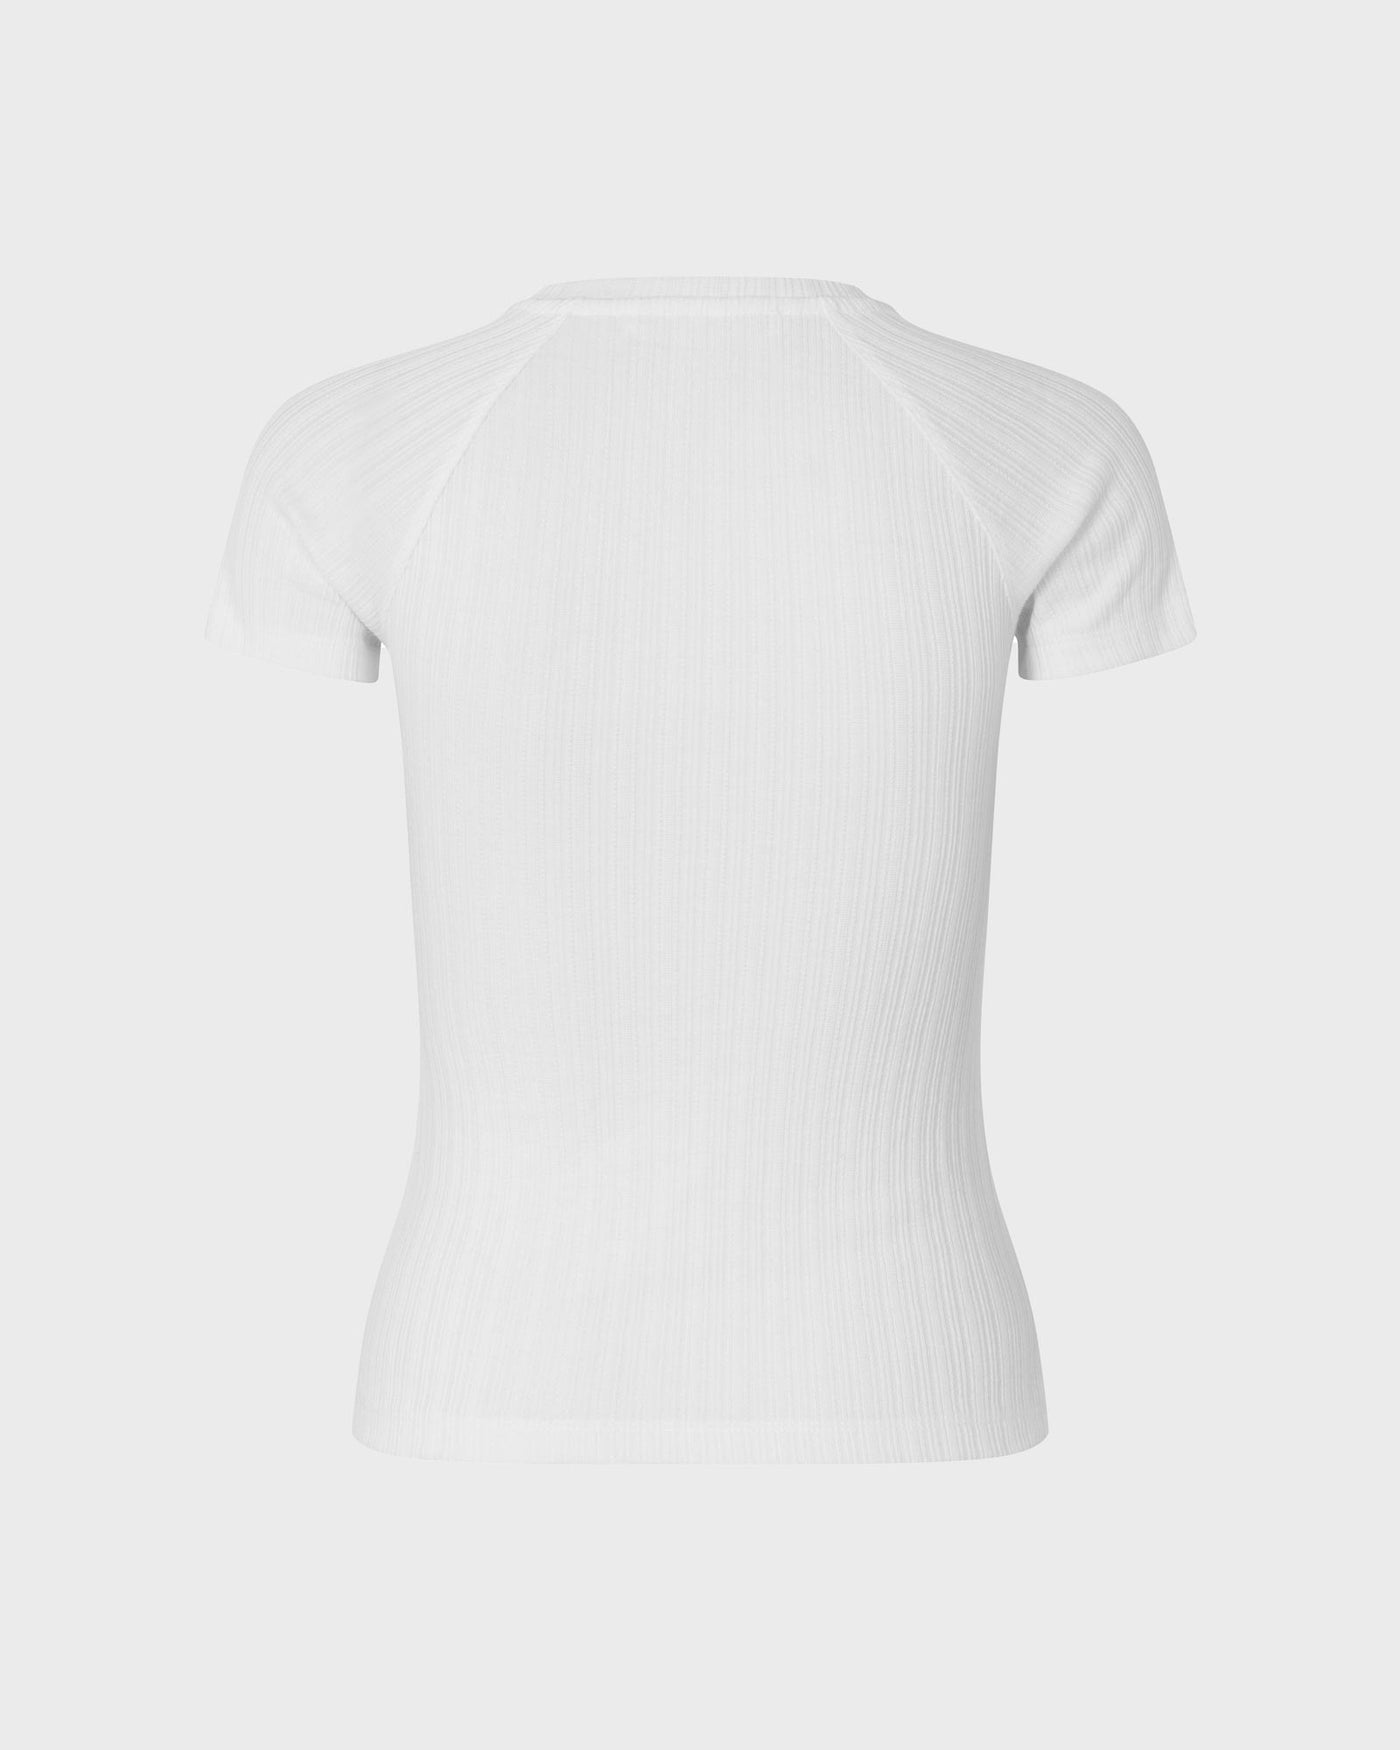 Salinn T-Shirt White myMEID